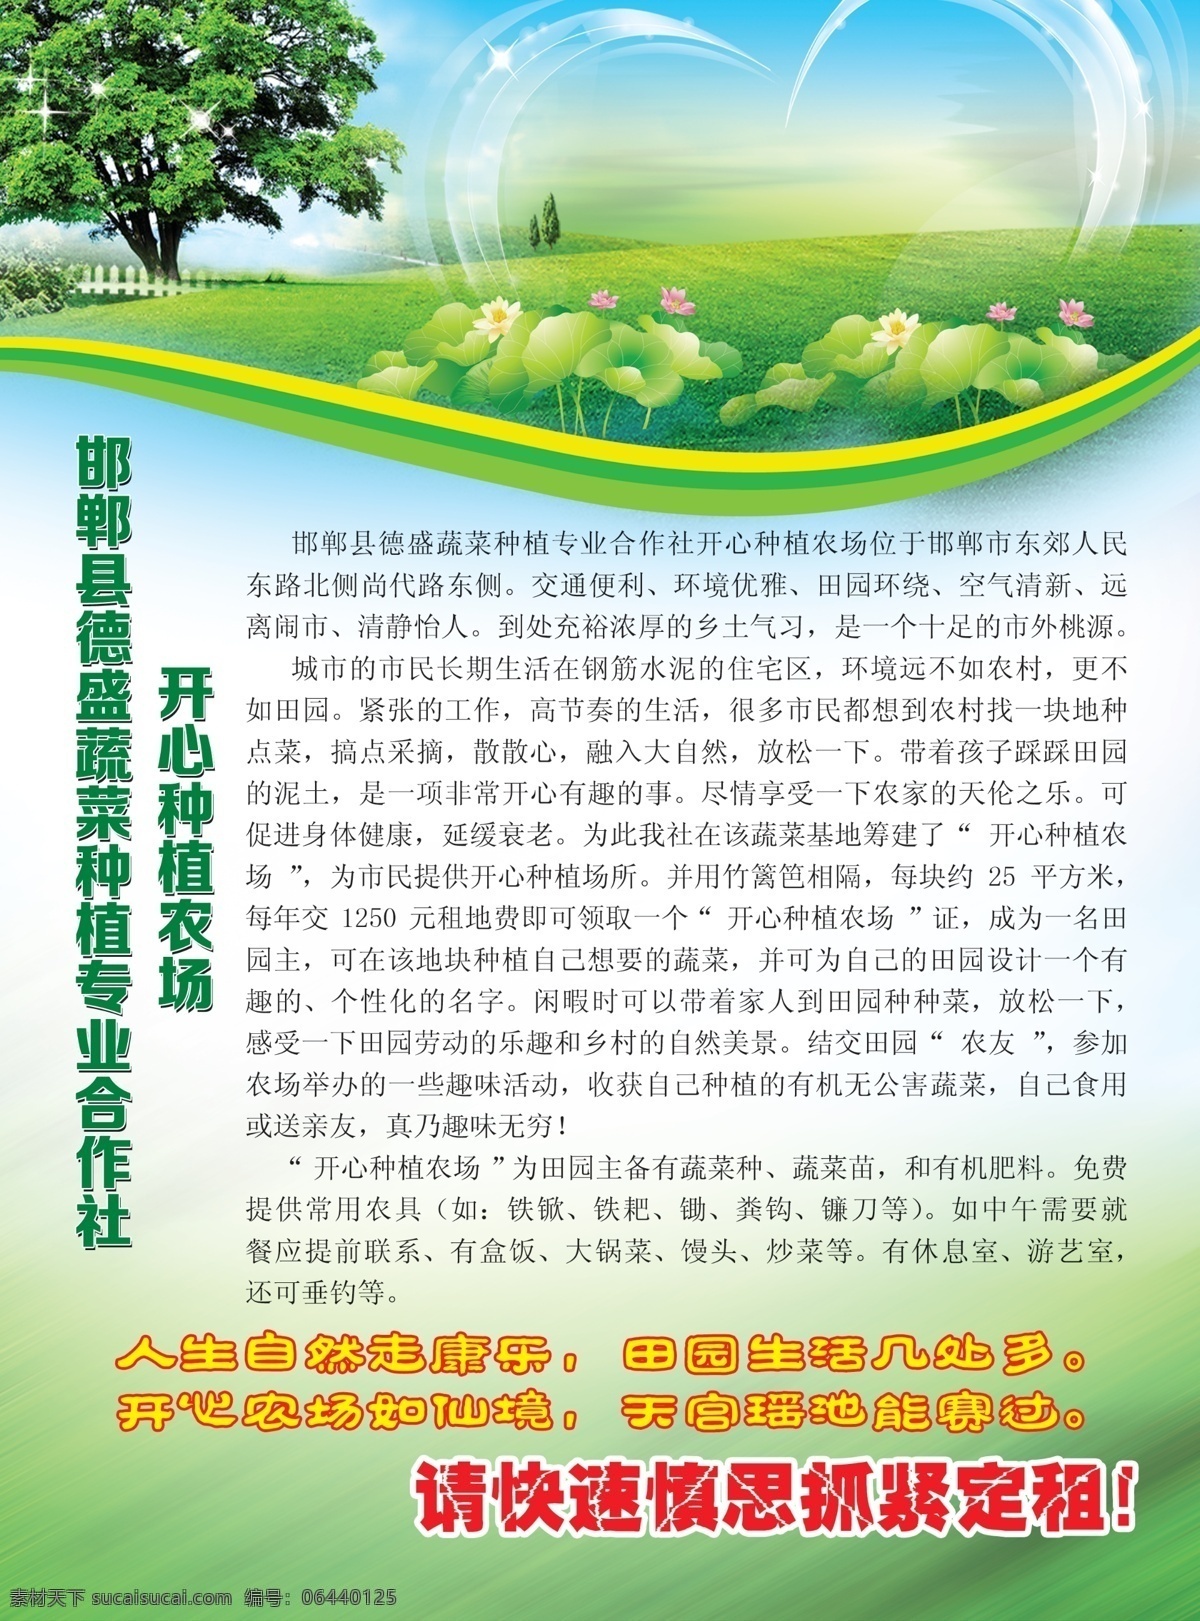 农场宣传单 绿色 健康 彩页 蔬菜 合作社 dm宣传单 广告设计模板 源文件